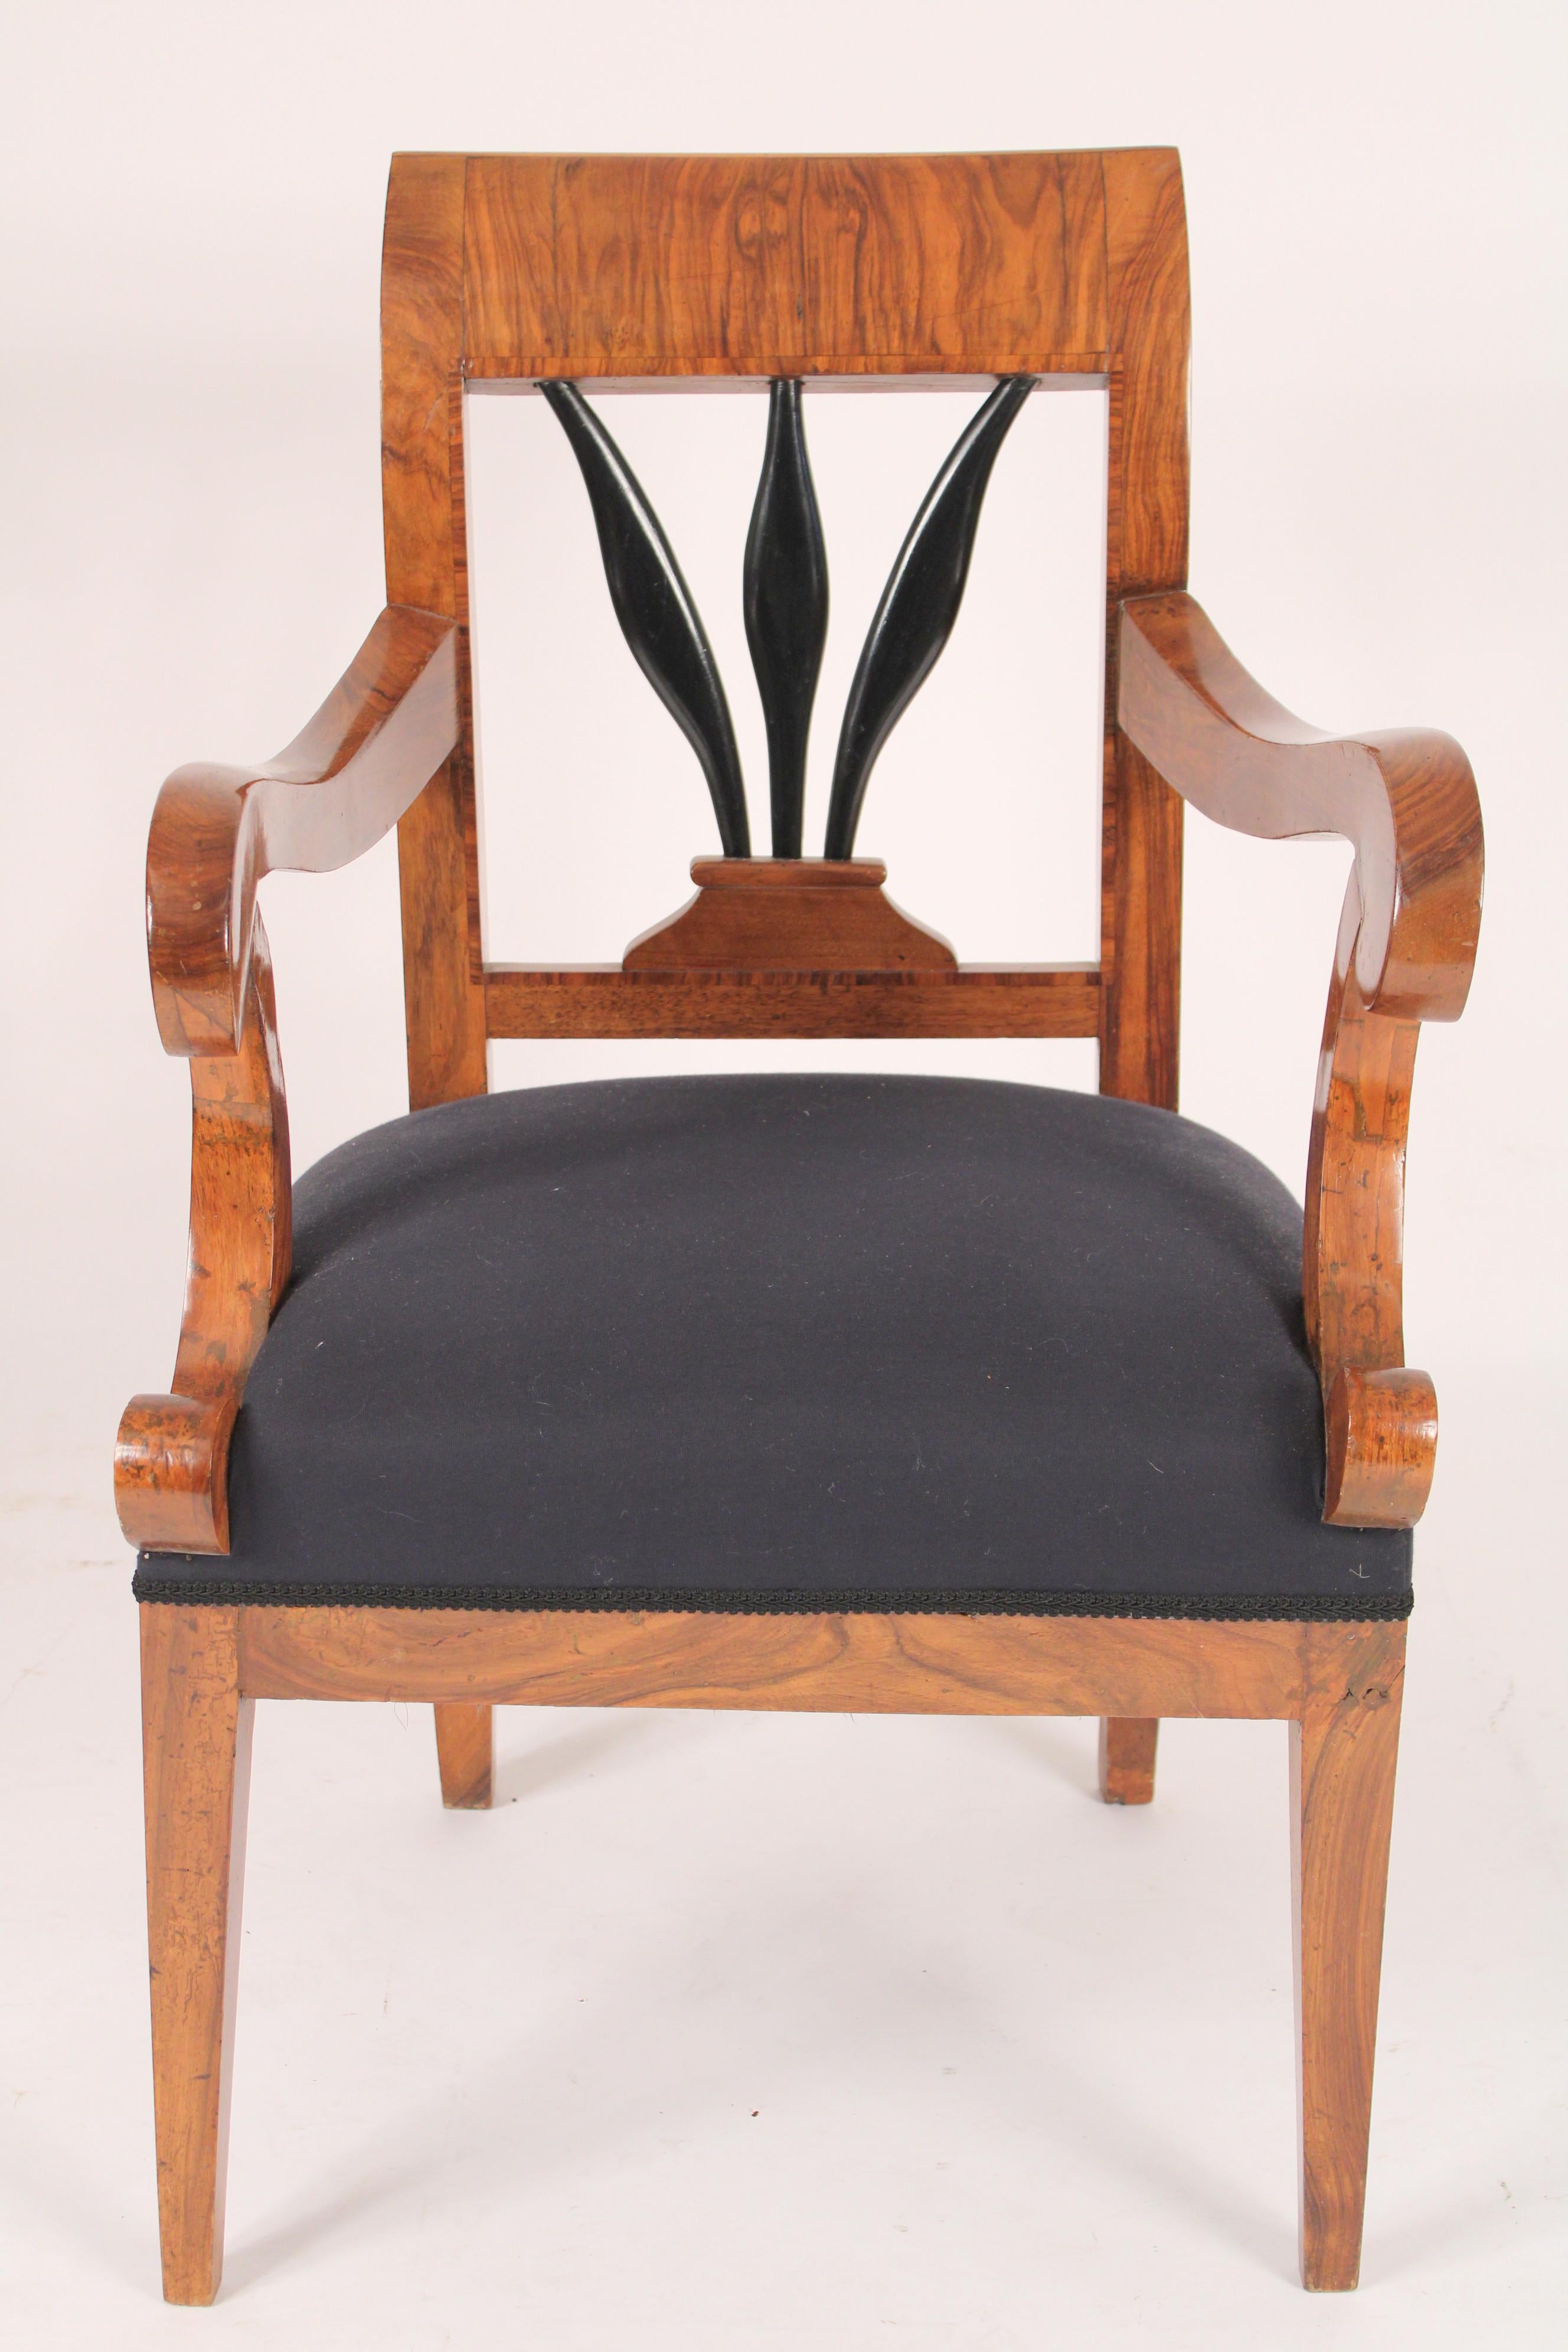 Biedermeier-Sessel aus Nussbaum-Wurzelholz, um 1835. Mit einer schön gemaserten Kammleiste aus Nussbaum, einer ebonisierten Rückenlehne aus Weizenmantel, s-förmigen Armlehnen, die auf c-förmigen Armstützen auf quadratischen, konischen Beinen ruhen.